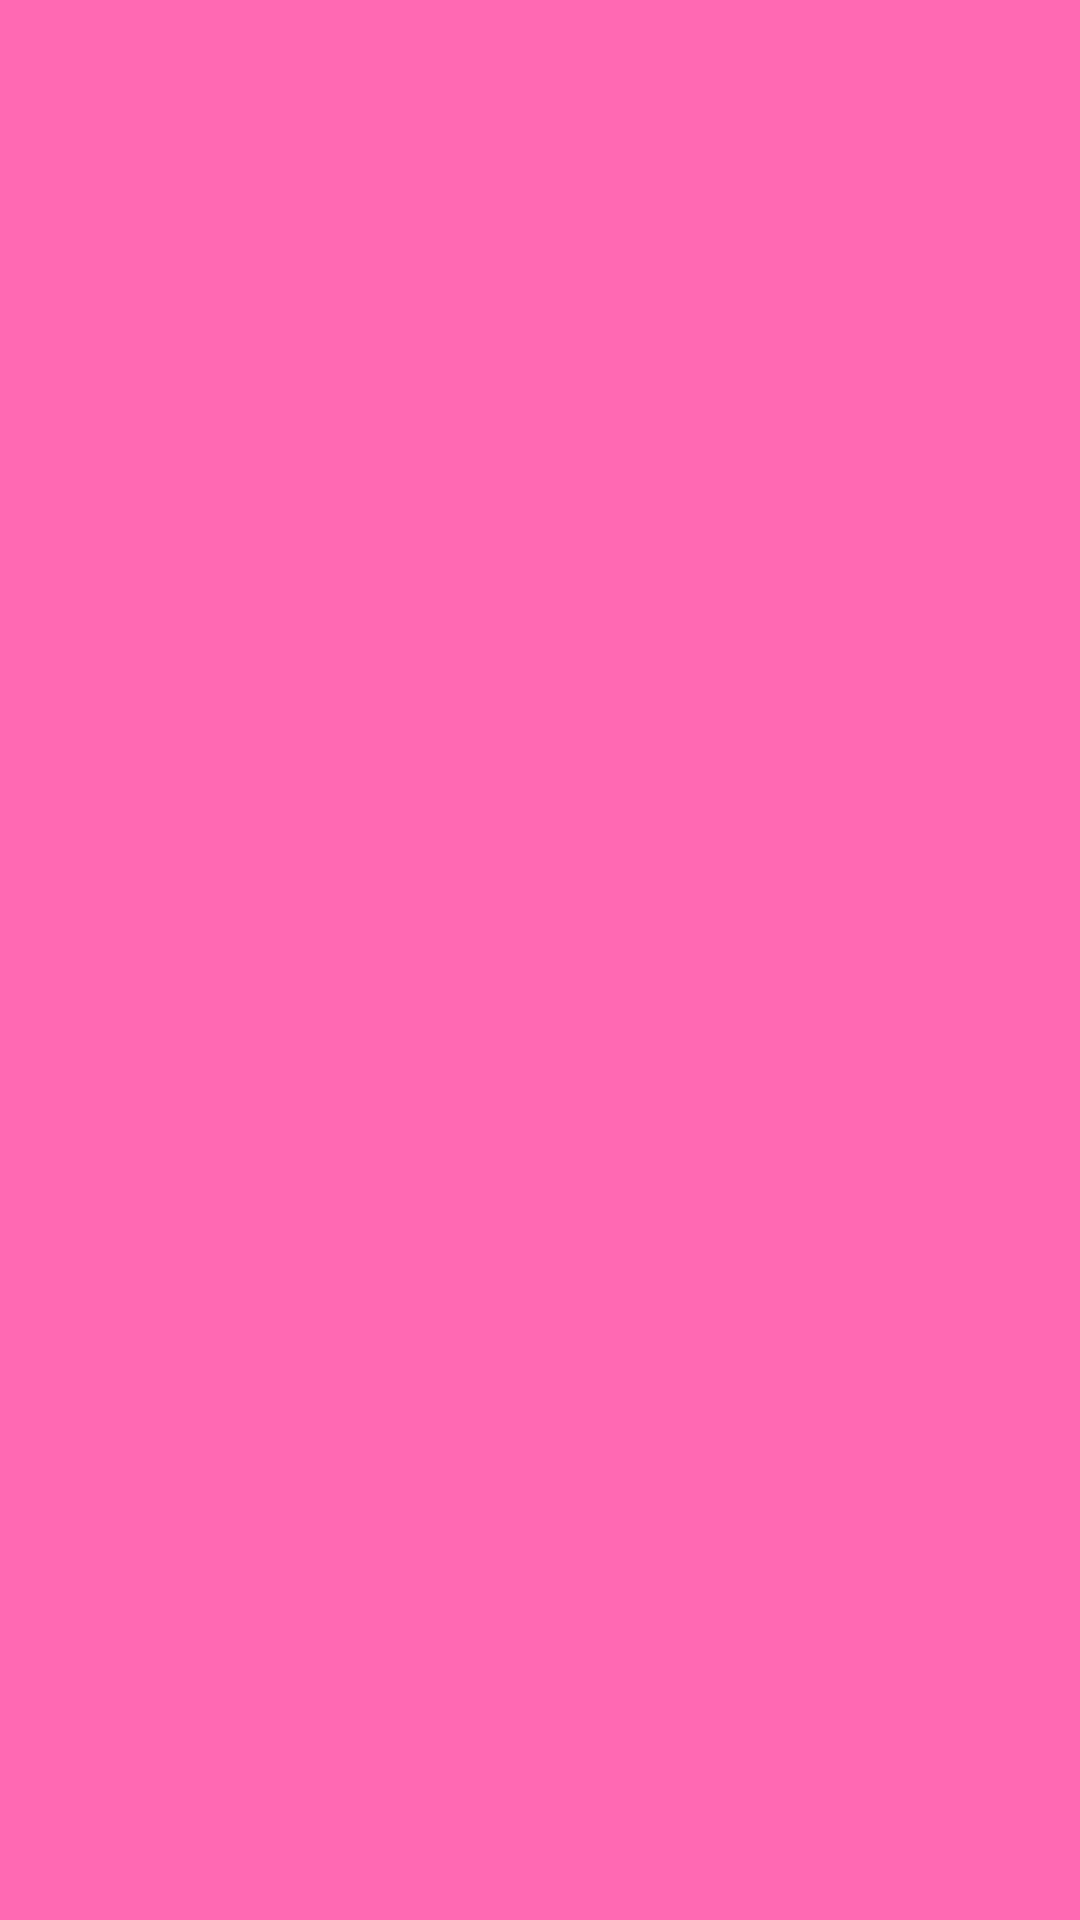 Rosa sólido iPhone Fondos de pantalla | iPhoneWallpapers | Papel tapiz rosa